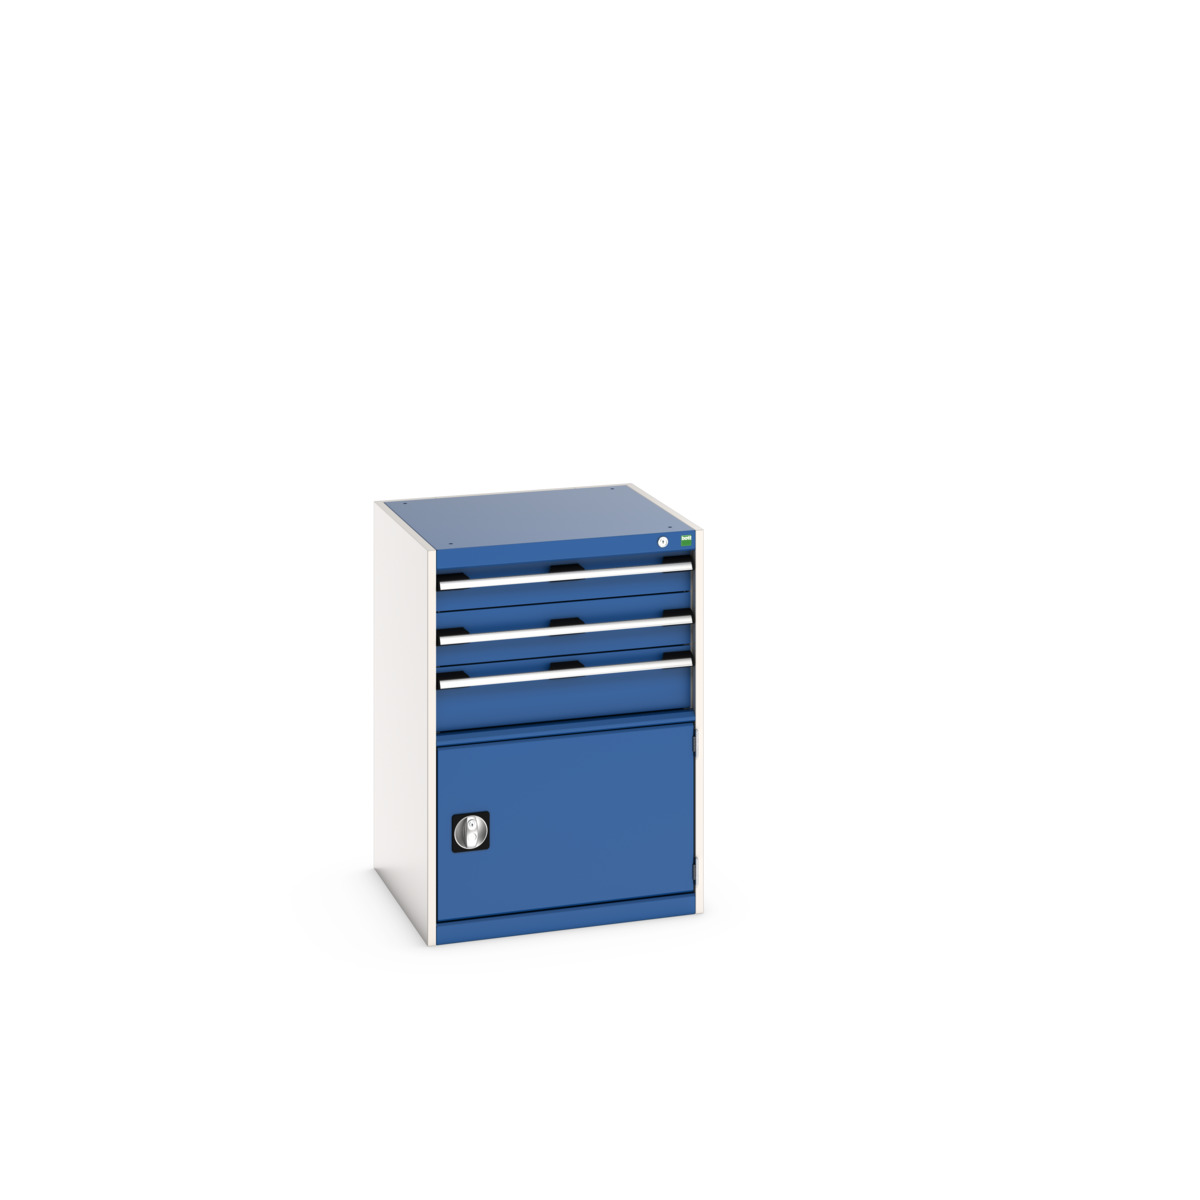 40019043.11V - cubio drawer-door cabinet